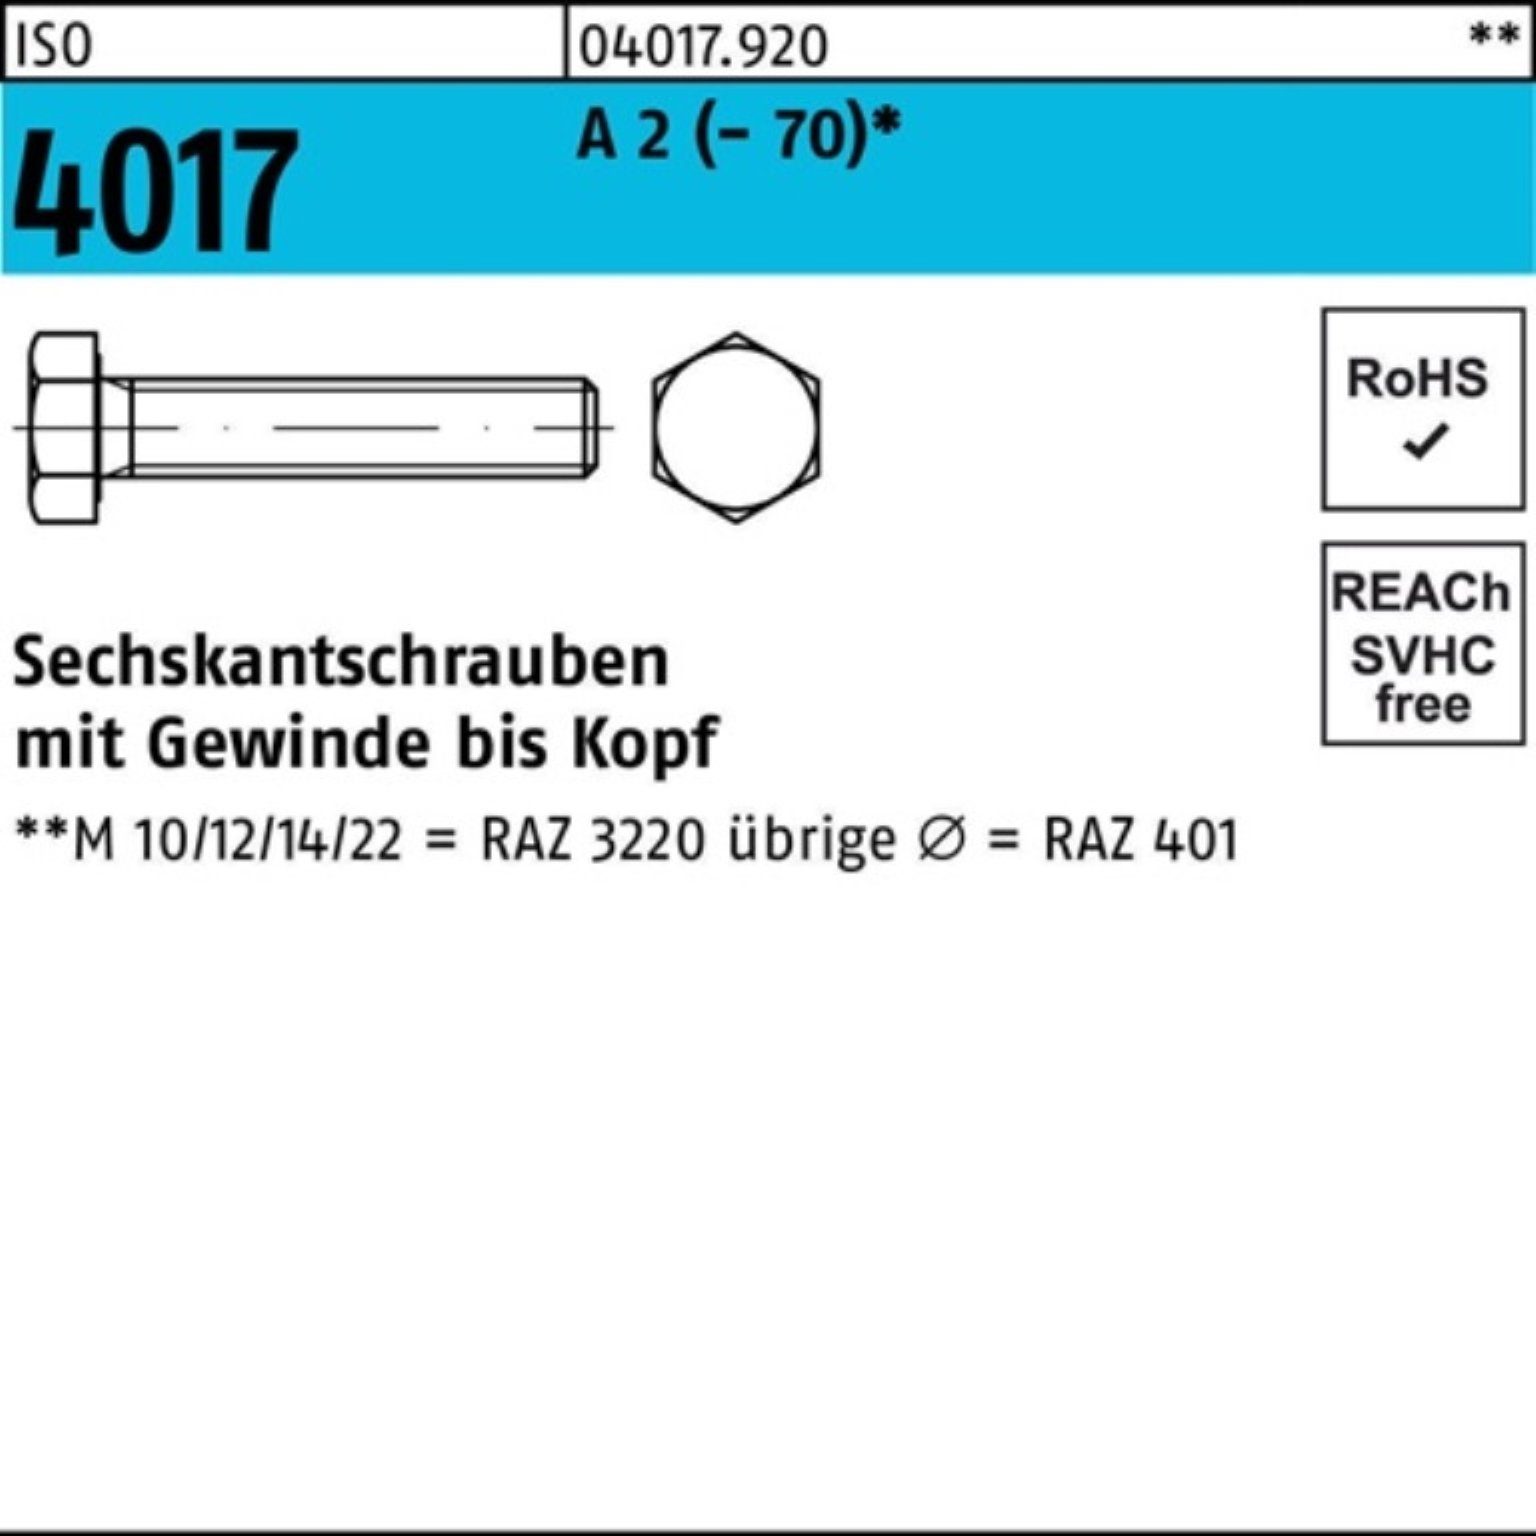 Bufab Sechskantschraube 100er M24x Sechskantschraube 2 90 Pack ISO Stück 4017 VG (70) 1 I A